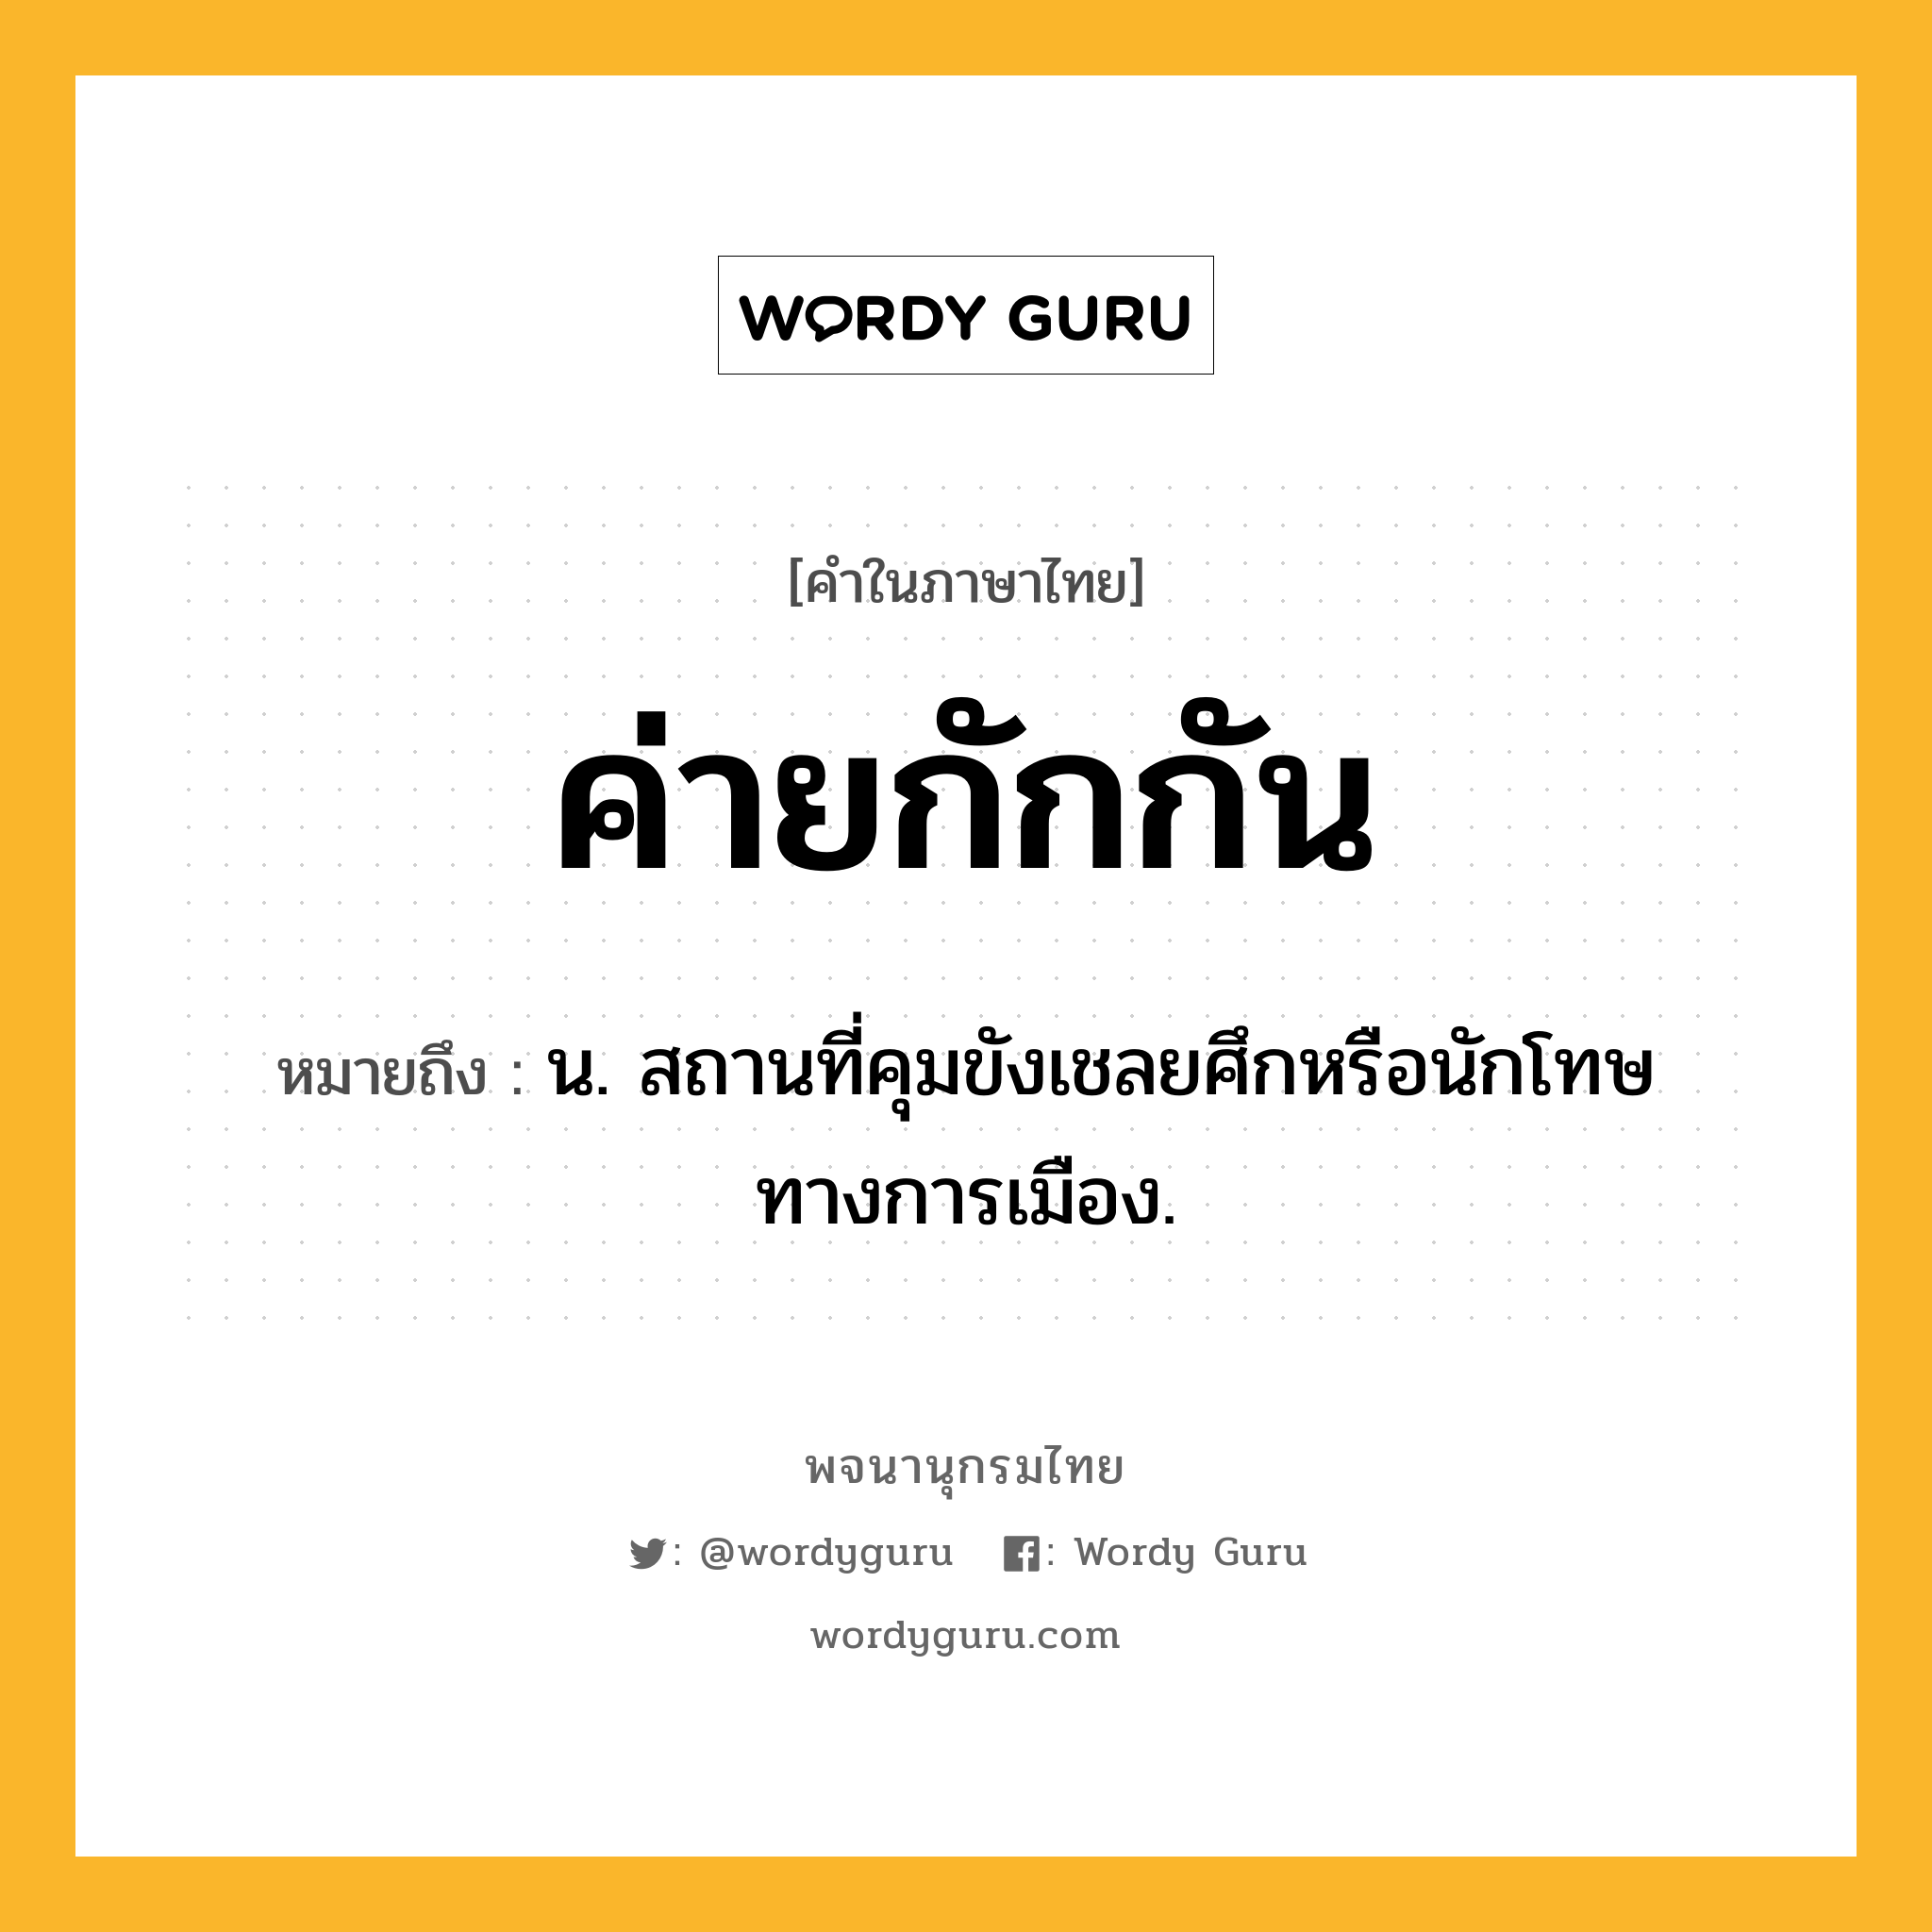 ค่ายกักกัน ความหมาย หมายถึงอะไร?, คำในภาษาไทย ค่ายกักกัน หมายถึง น. สถานที่คุมขังเชลยศึกหรือนักโทษทางการเมือง.